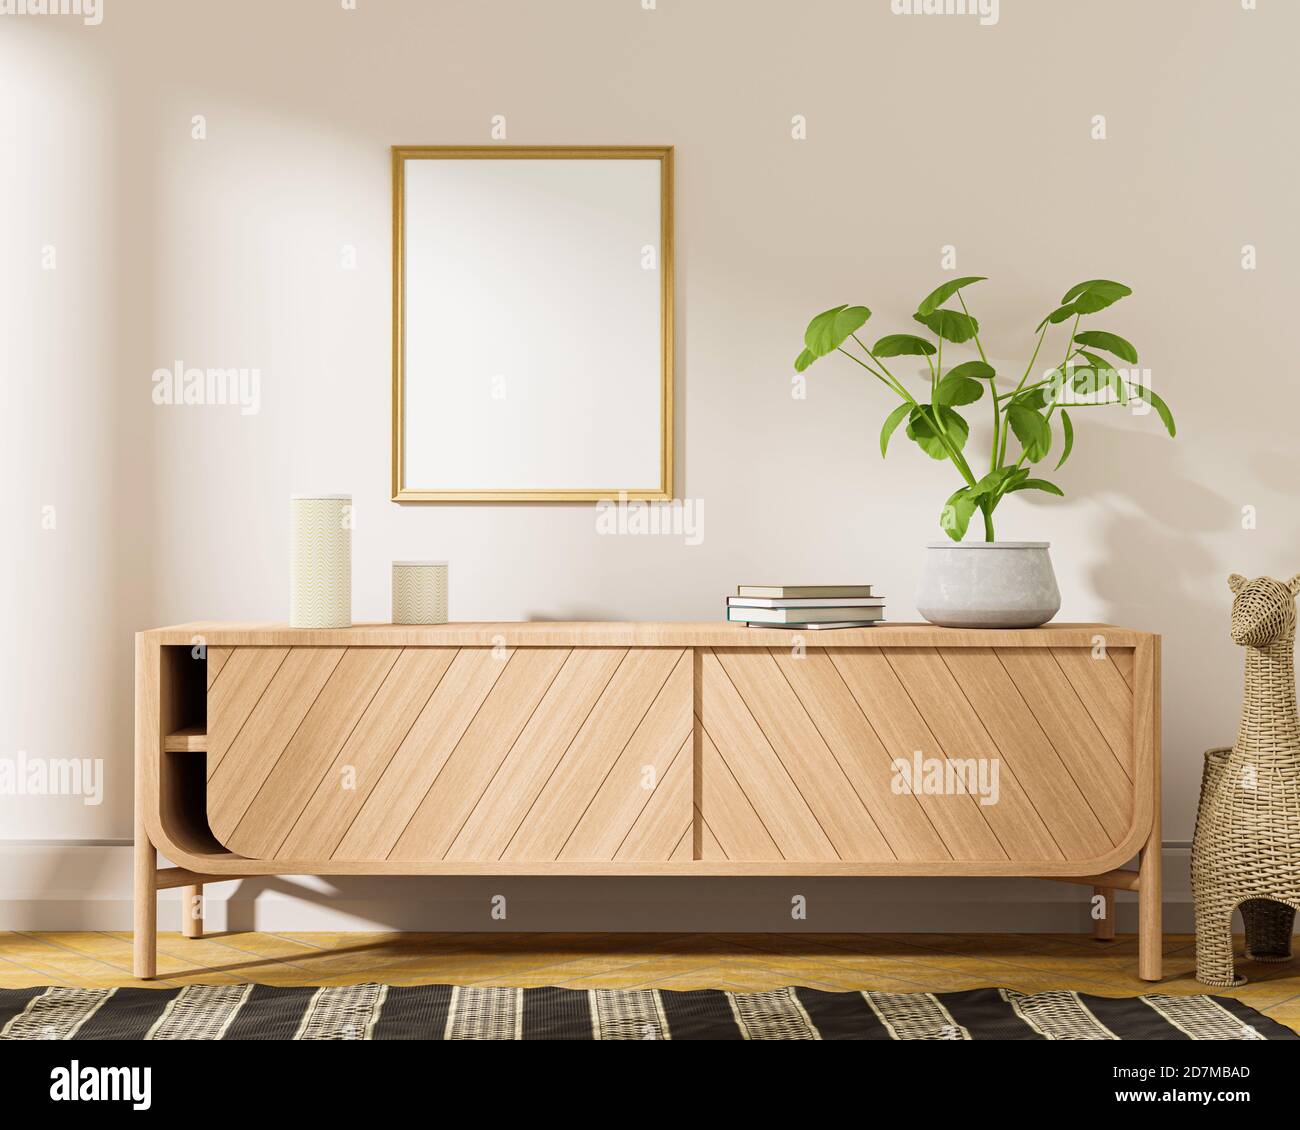 Living Room interior in Scandinavian style.3d render Stock Photo